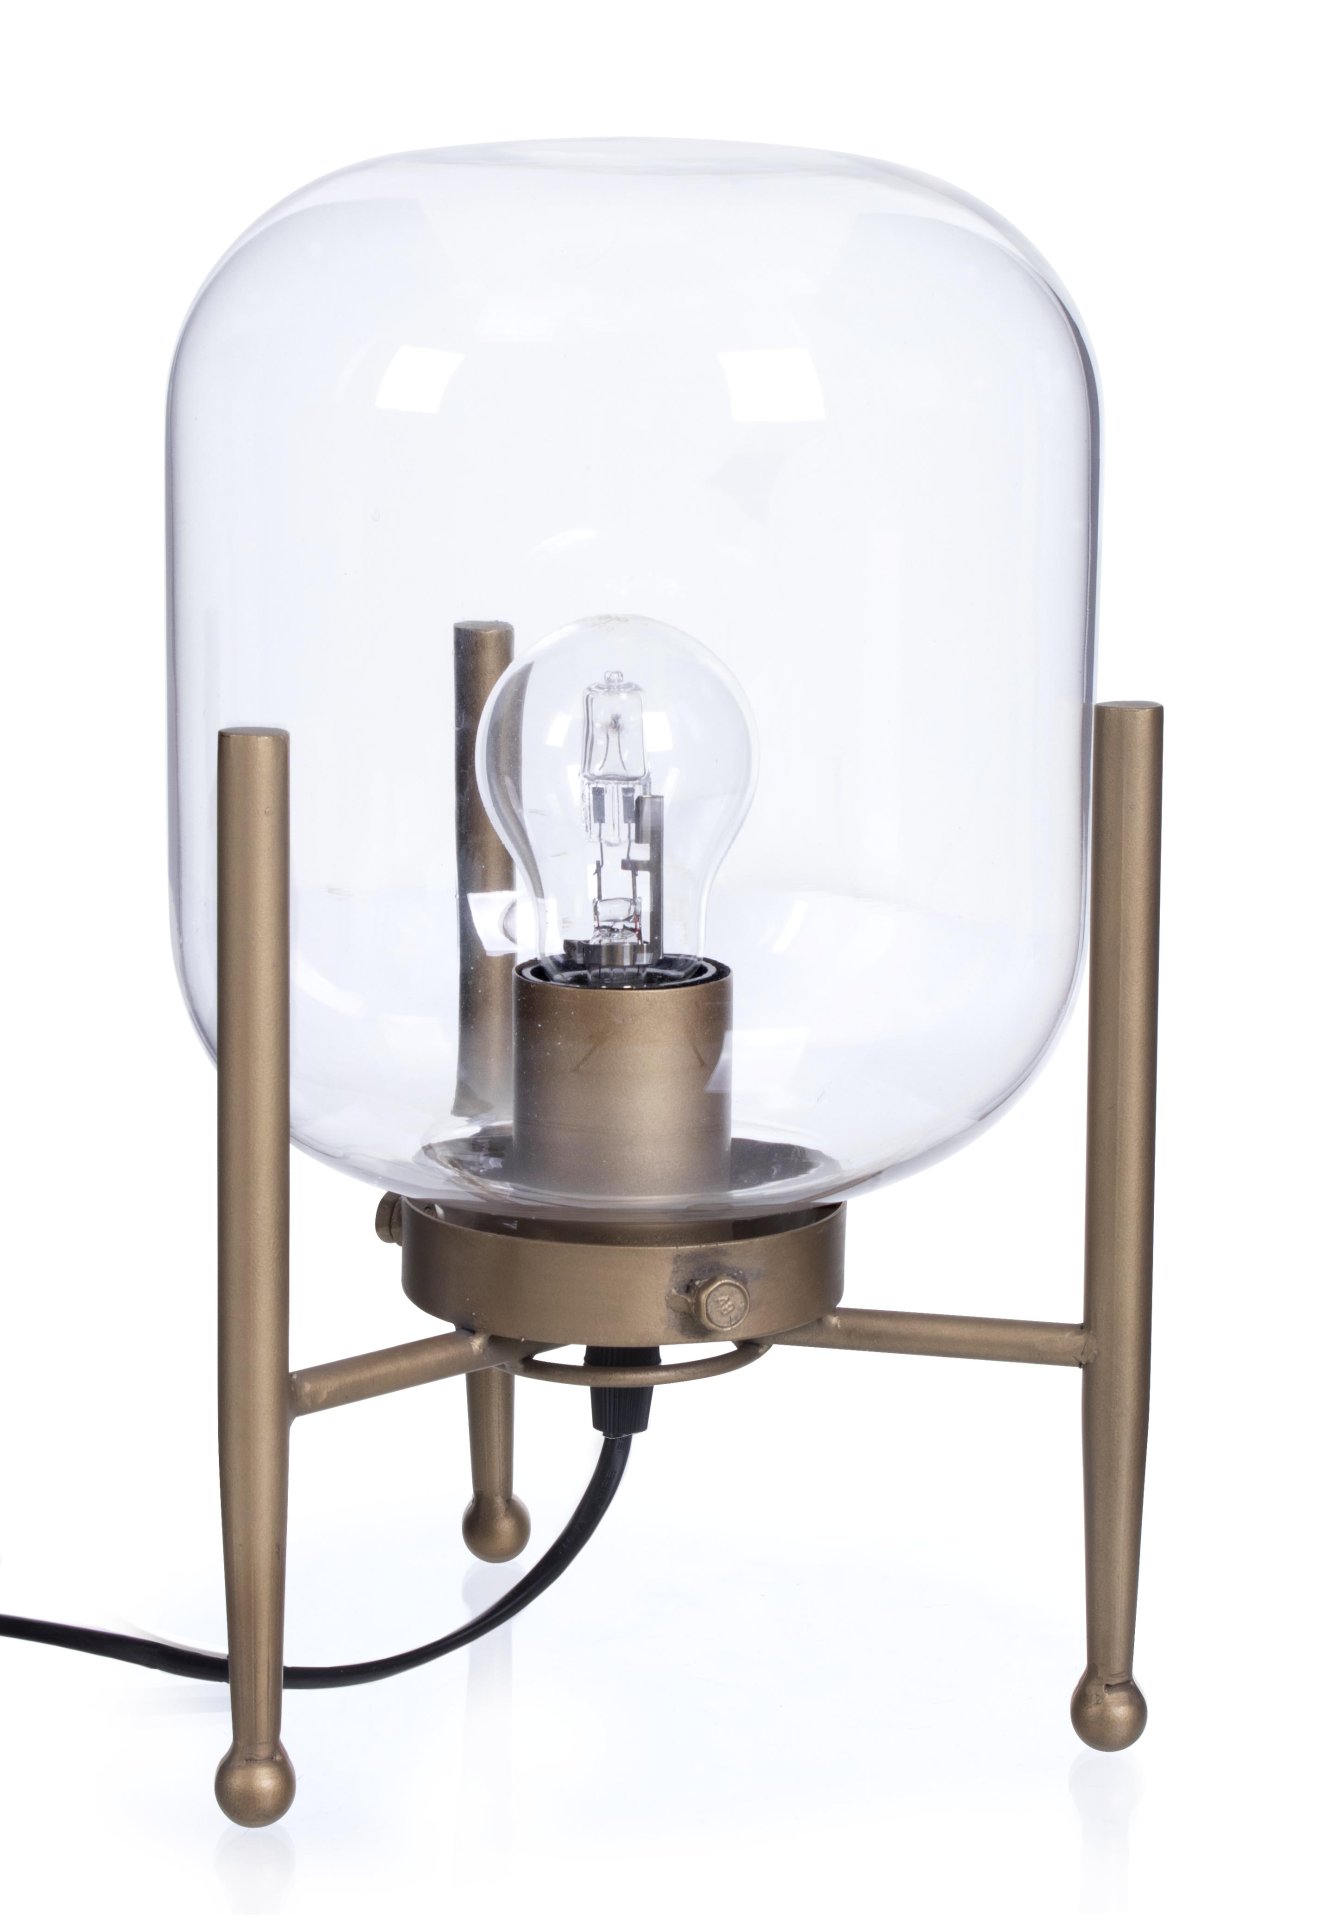 Die Tischleuchte Queer überzeugt mit ihrem klassischen Design. Gefertigt wurde sie aus Metall, welches einen Messing Farbton besitzt. Der Lampenschirm ist aus Glas.  Die Lampe besitzt eine Höhe von 30,5 cm.